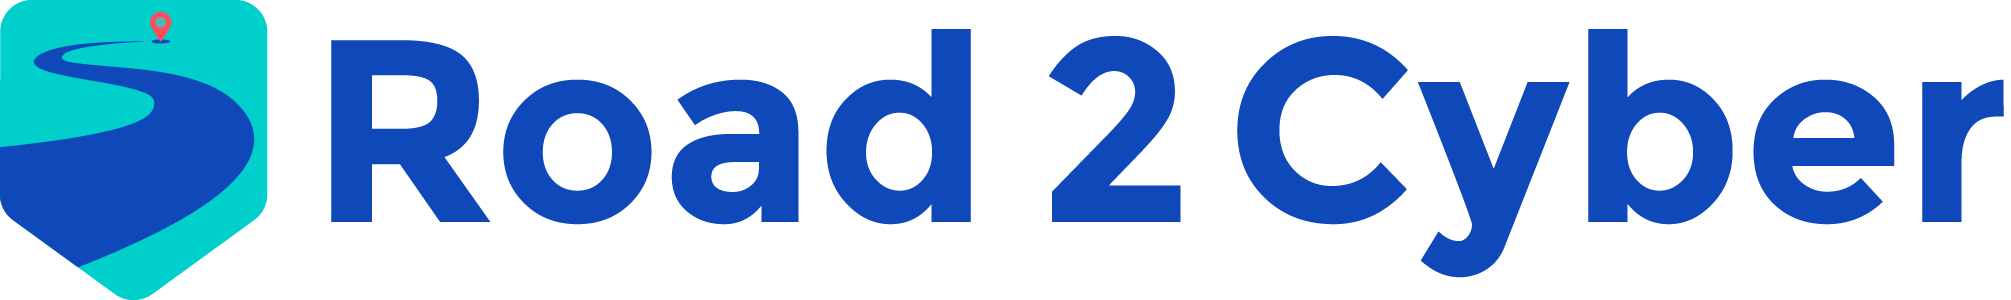 Road2Cyber logo